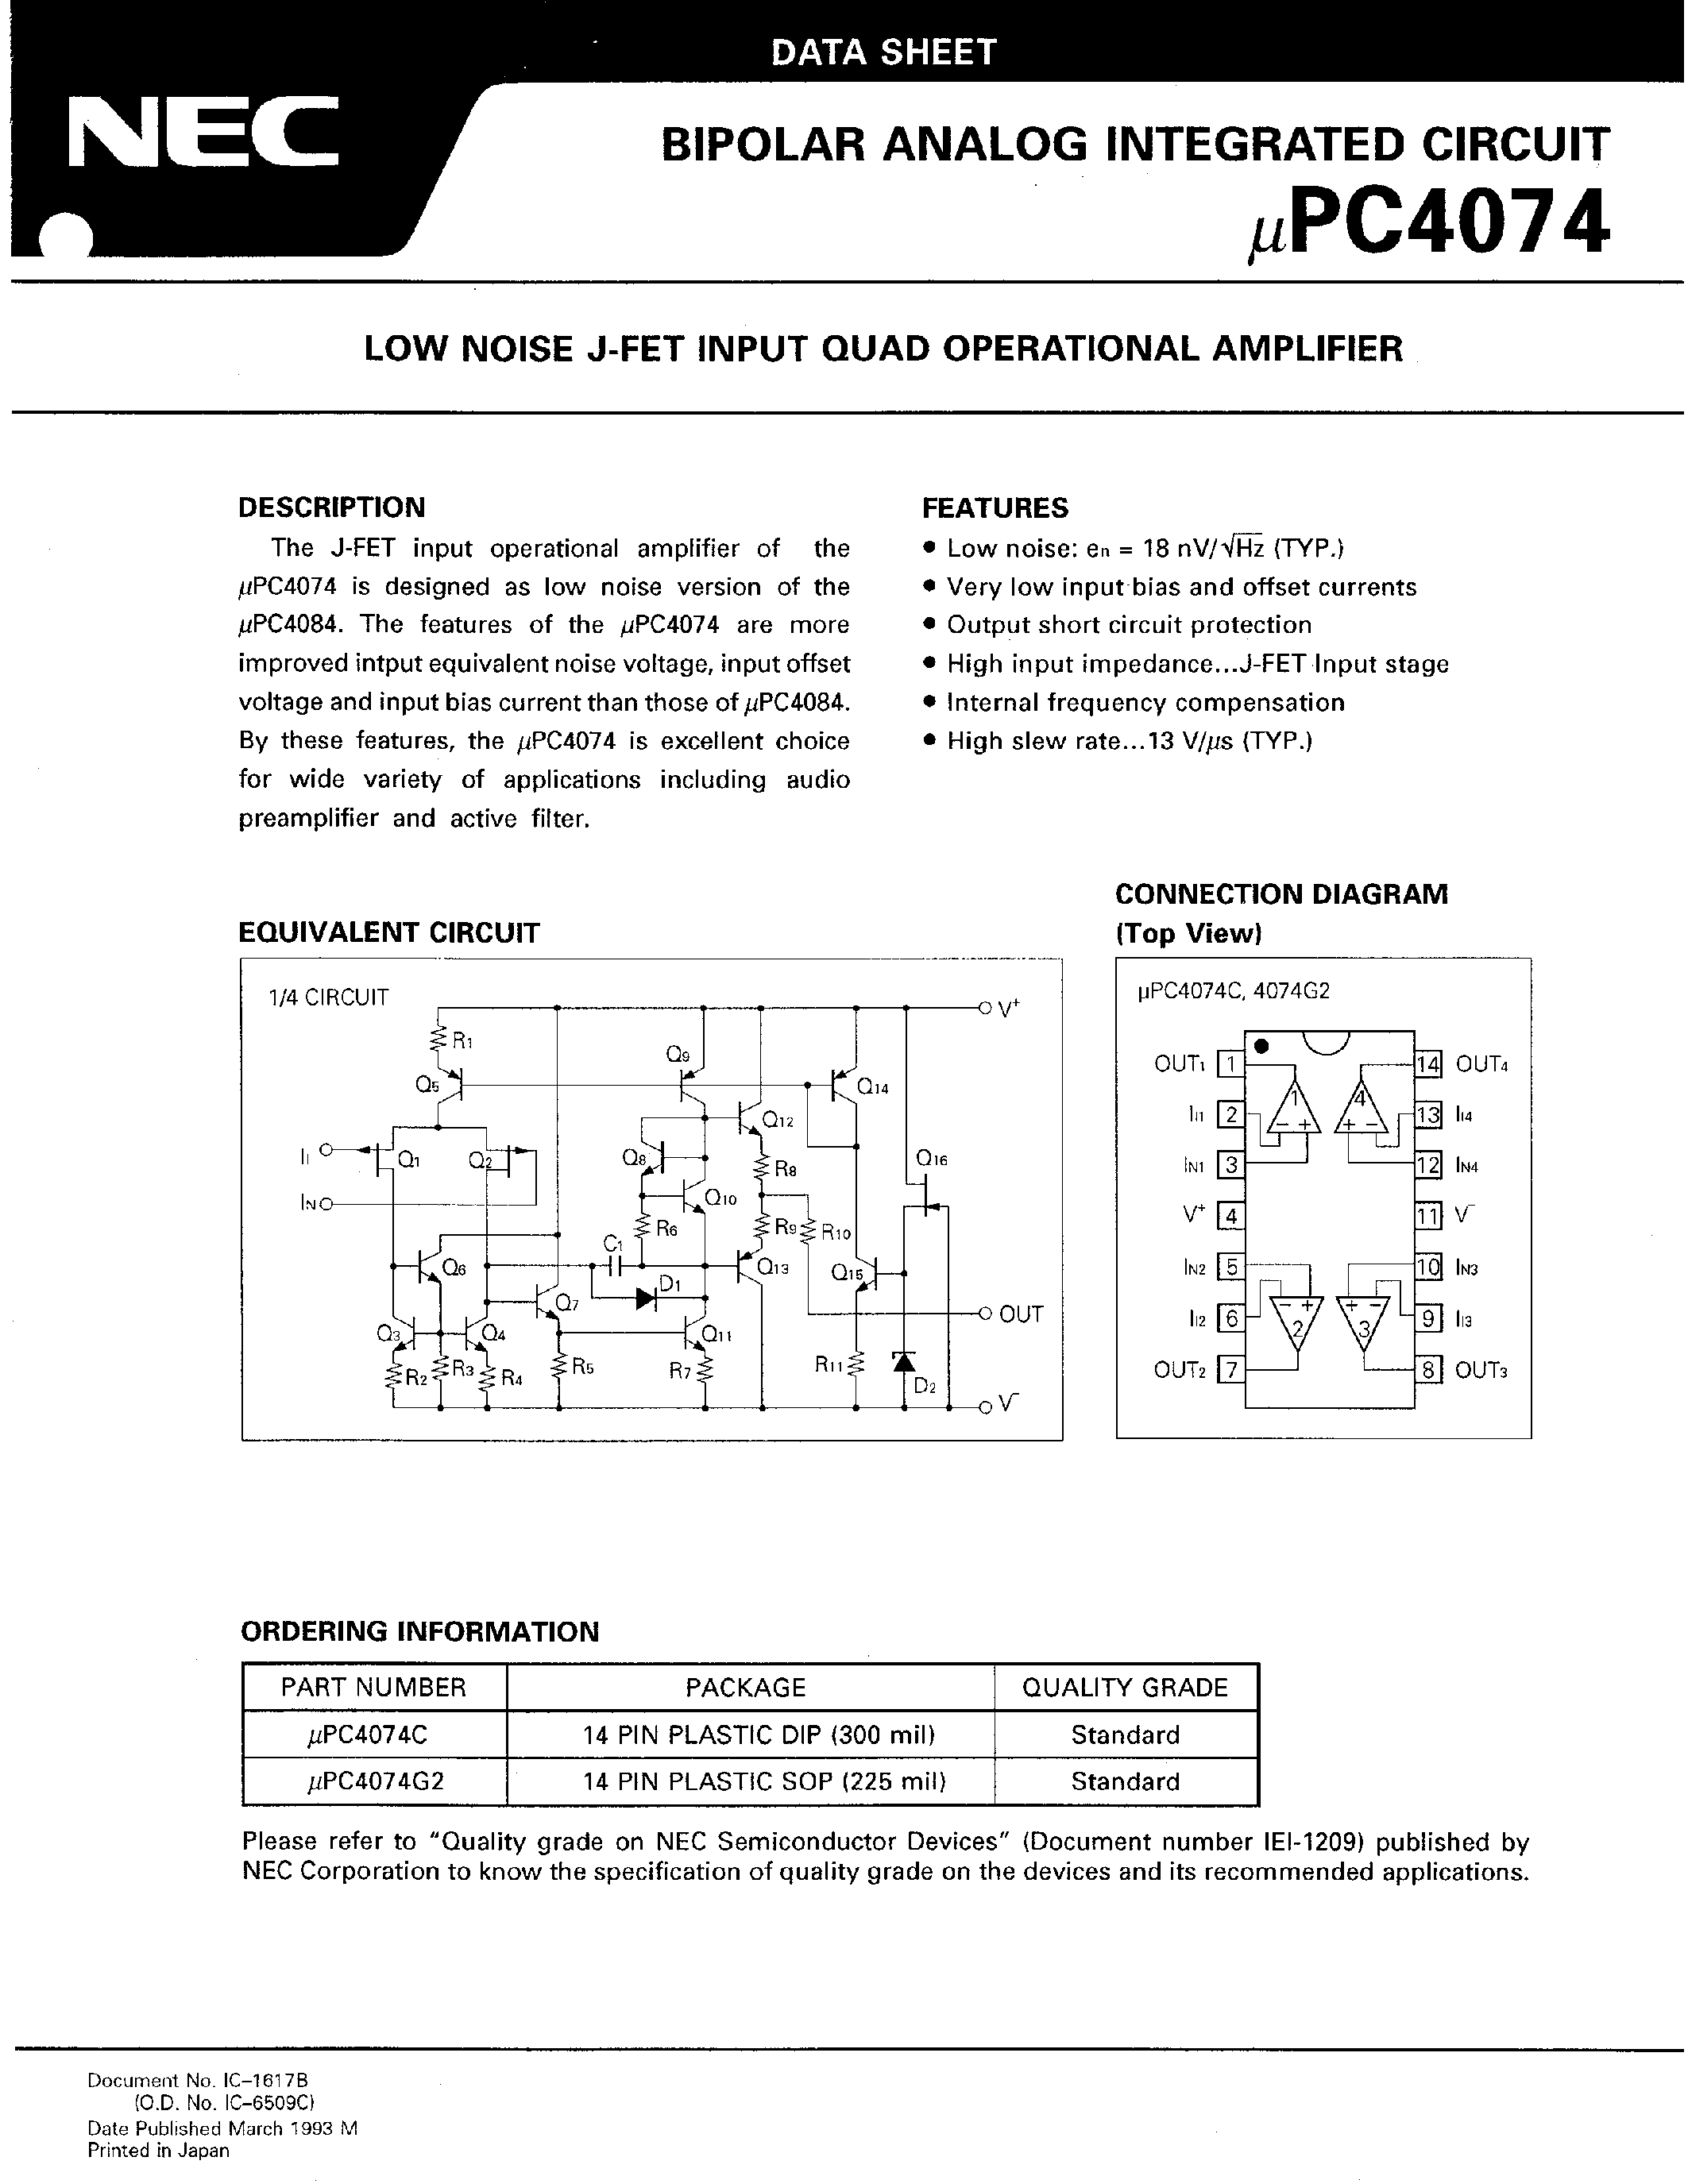 Даташит UPC4074C - LOW NOISE J-FET INPUT QUAD OPERATIONAL AMPLIFIER страница 1